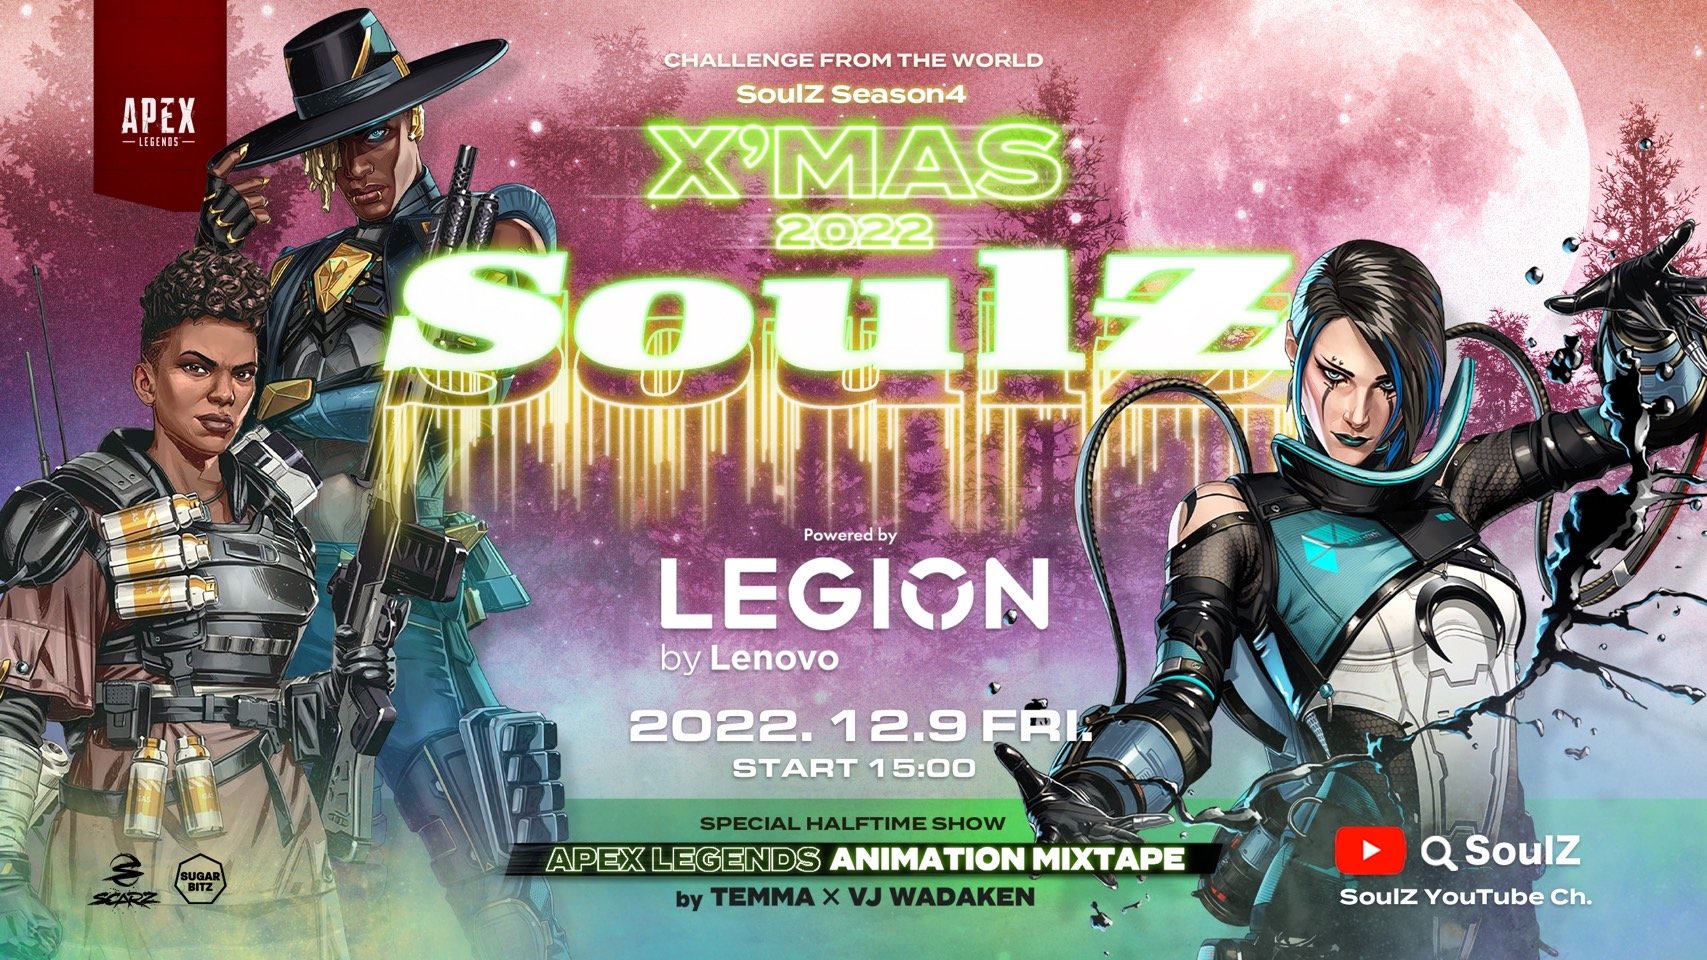 【大会情報】SoulZ -Apex Legends- Season4 X'mas 2022【2022年12月9日】